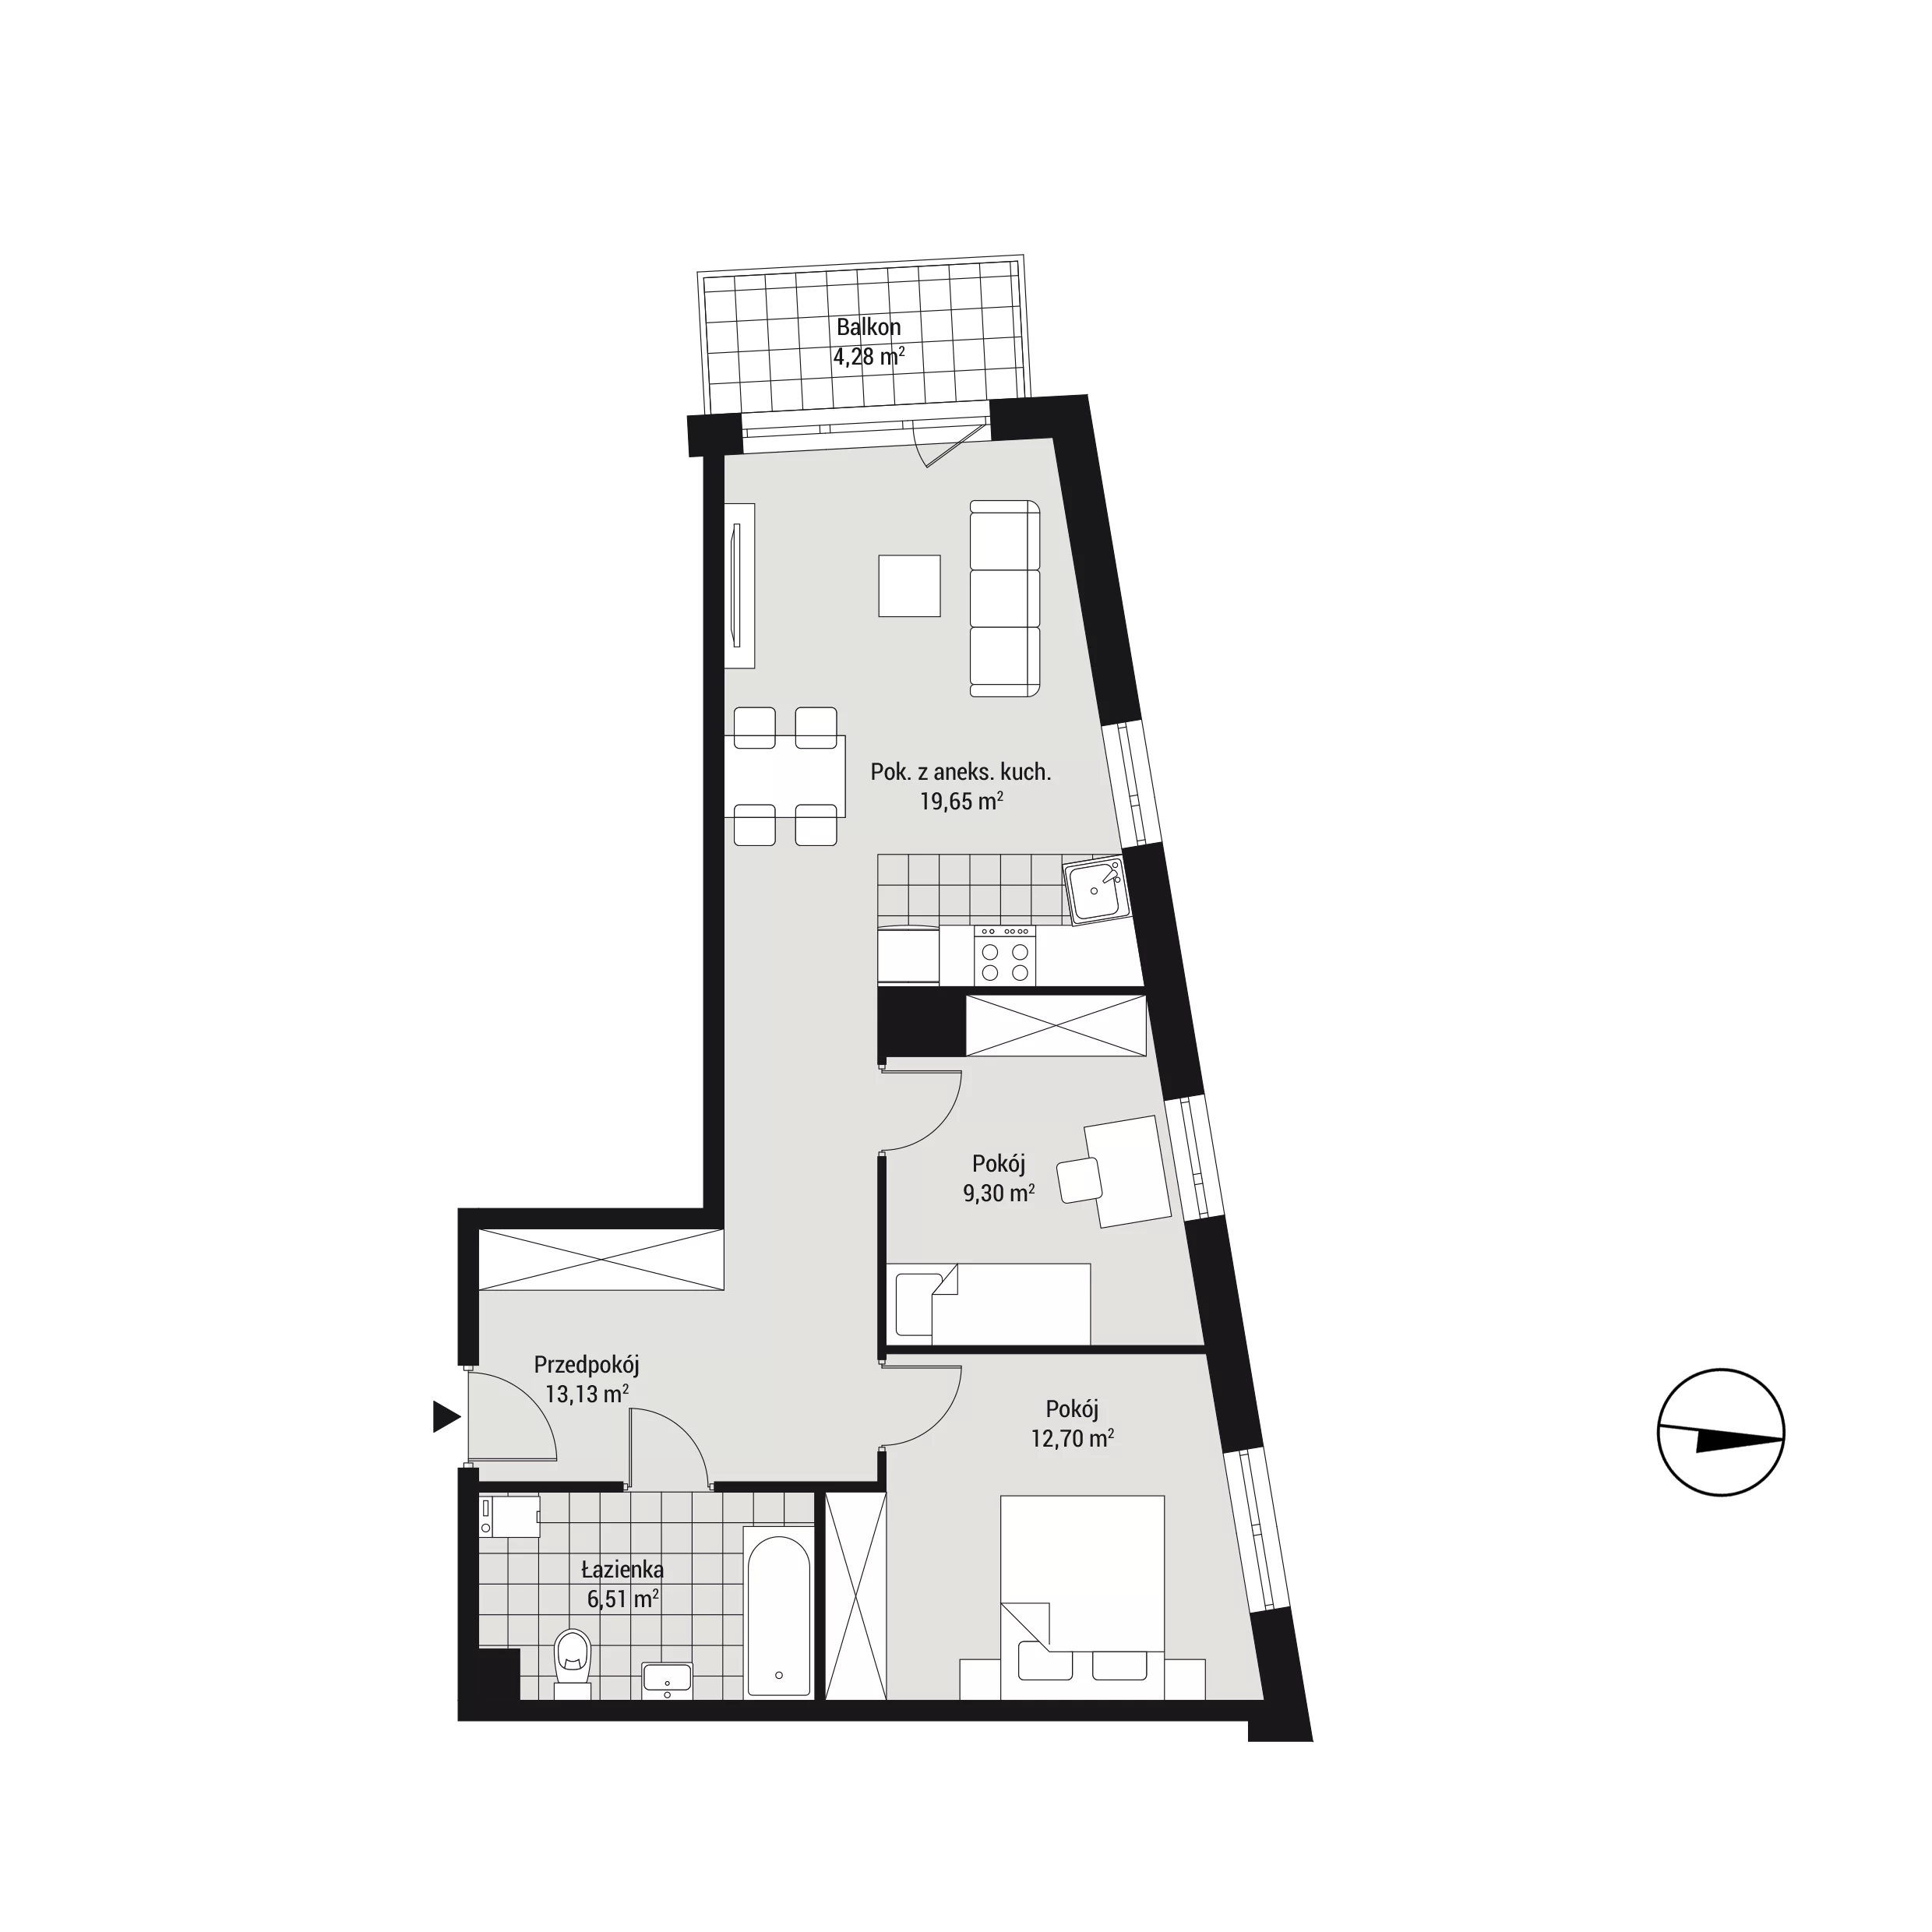 Mieszkanie 61,33 m², piętro 1, oferta nr mieszkanie C15, Na Koszutce, Katowice, Śródmieście, Koszutka, ul. Słoneczna 1